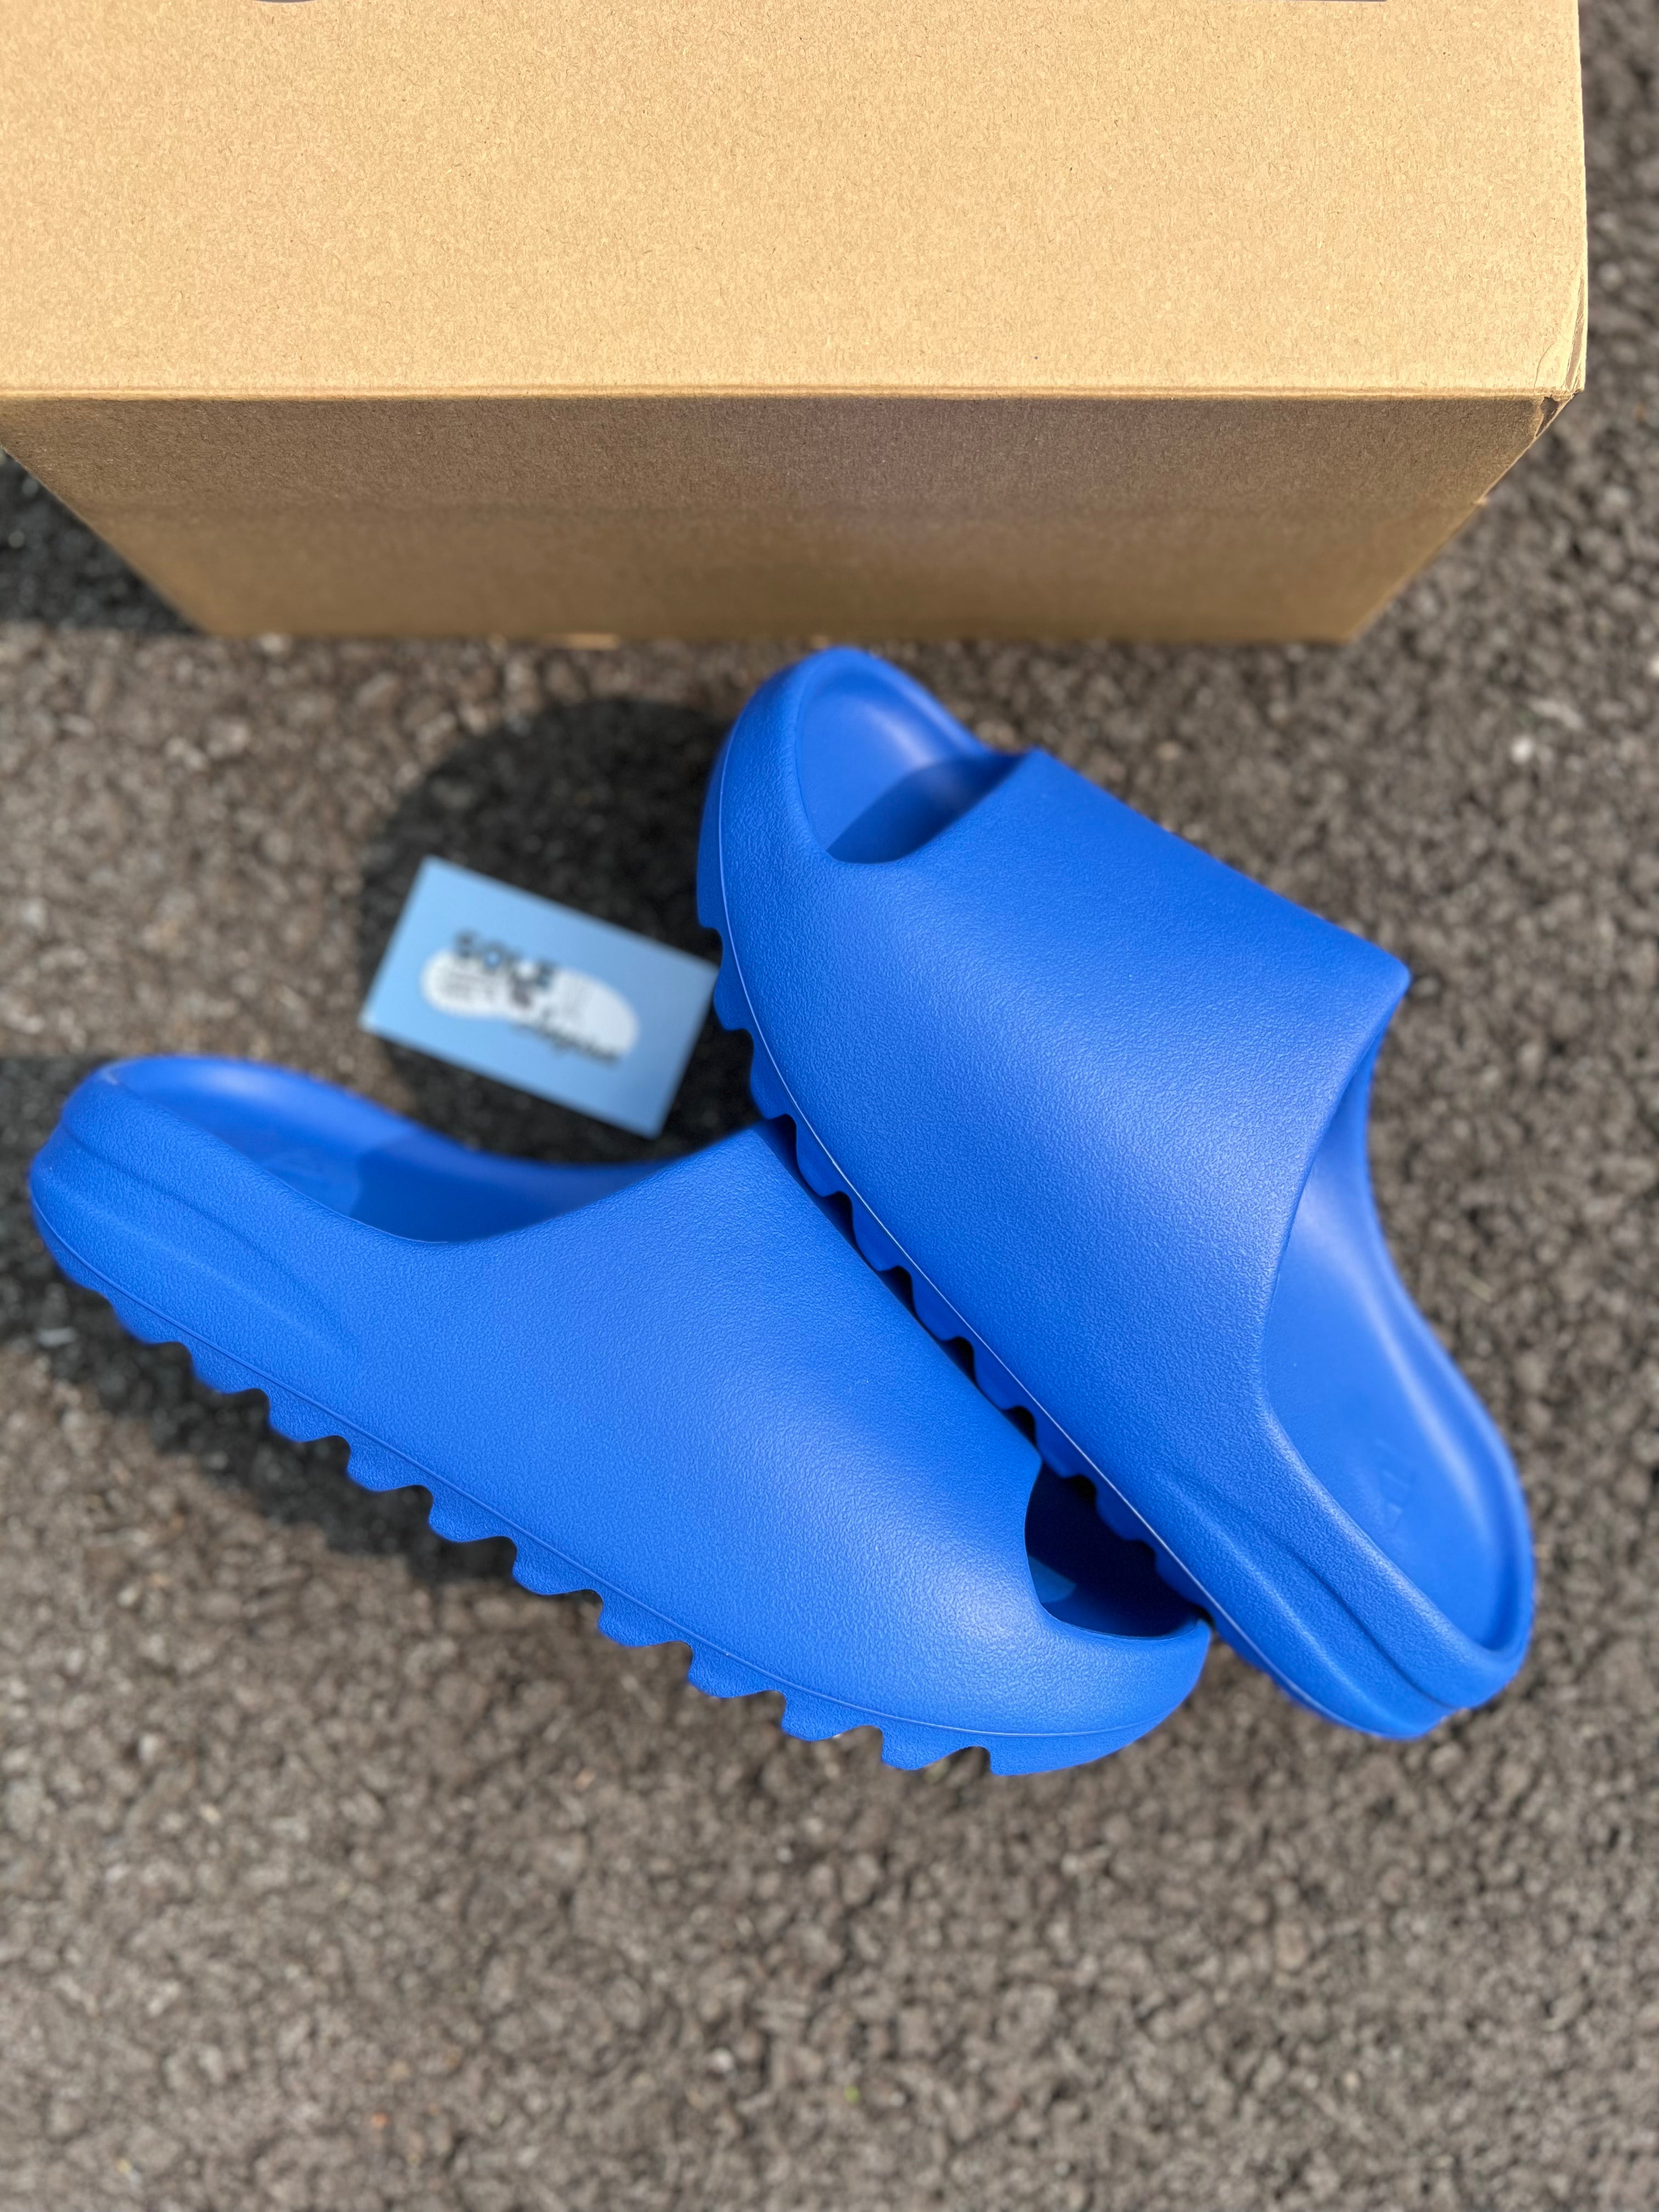 Adidas Yeezy Slide “Azure” –